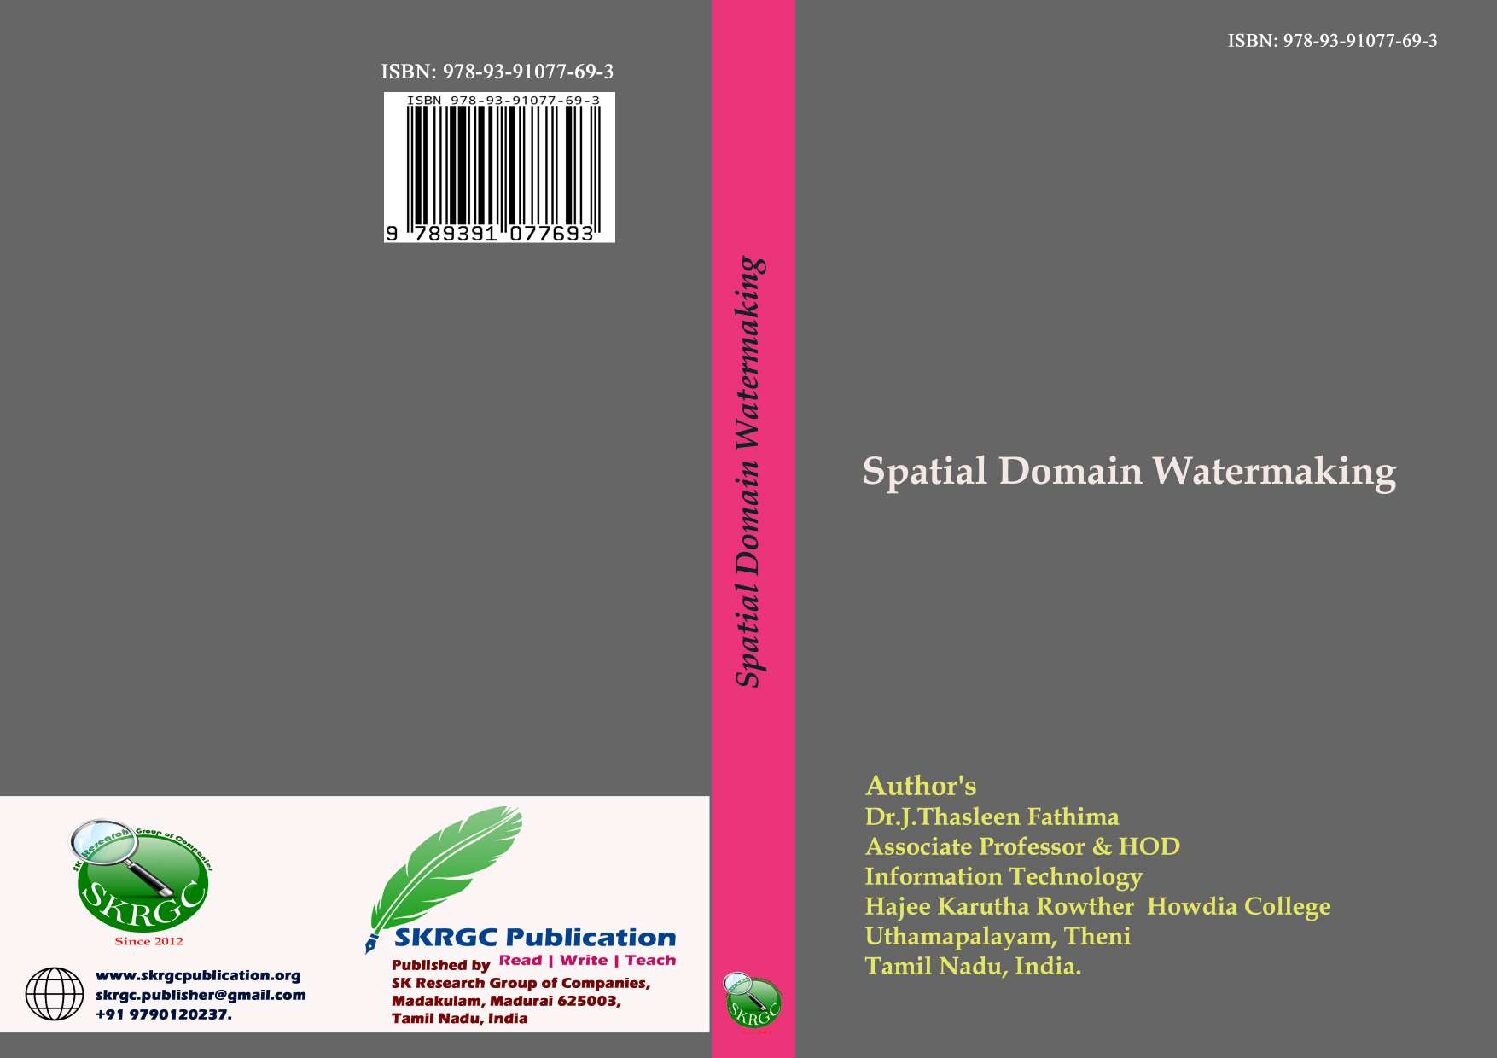 Spatial Domain Watermaking